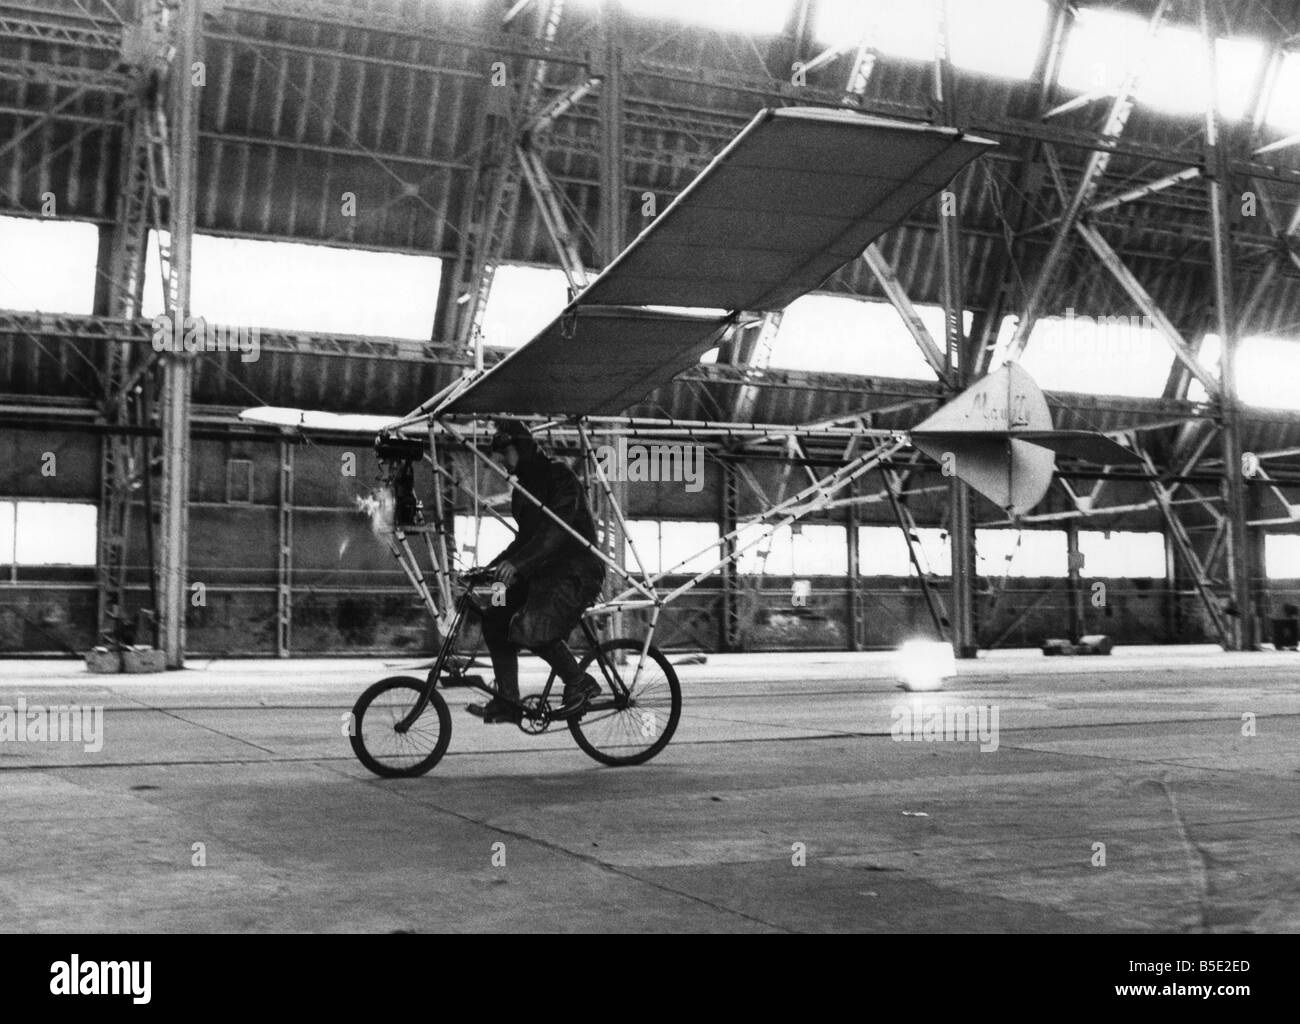 Drei junge Männer etwas Sensationelles für das königliche Turnier am Earls Court, London machen wollte, musste es fliegen: die Jugendlichen sind Auszubildende im Royal Aircraft Establishment, Farnborough, Hampshire. Und billig sein musste. Pilot Charlee Allesborough mit Geschwindigkeit auf das fliegende Fahrrad. ; Hinteren Aufzug ist nach unten positioniert, Fahrrad am Boden zu halten. ; Mai 1968 Stockfoto